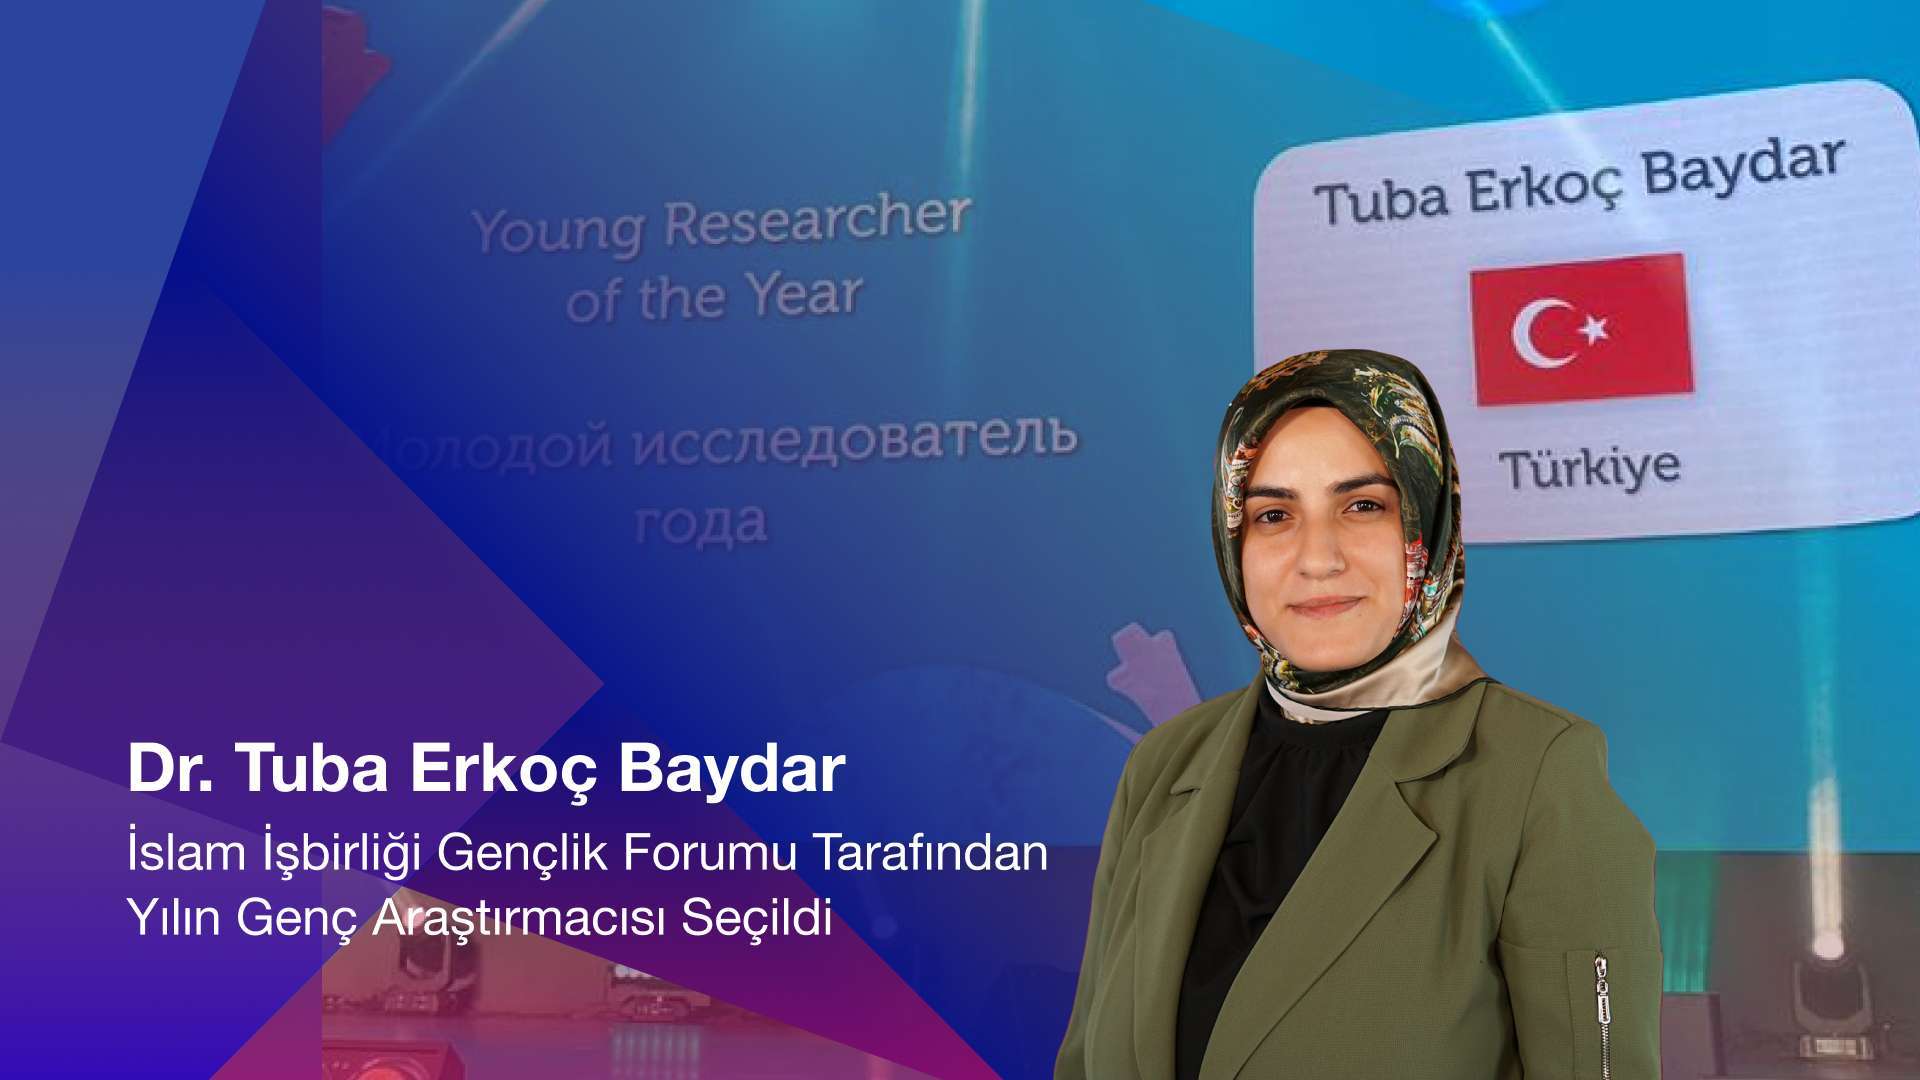 Dr. Tuba Erkoç Baydar İslam İşbirliği Gençlik Forumu Tarafından Yılın Genç Araştırmacısı Seçildi